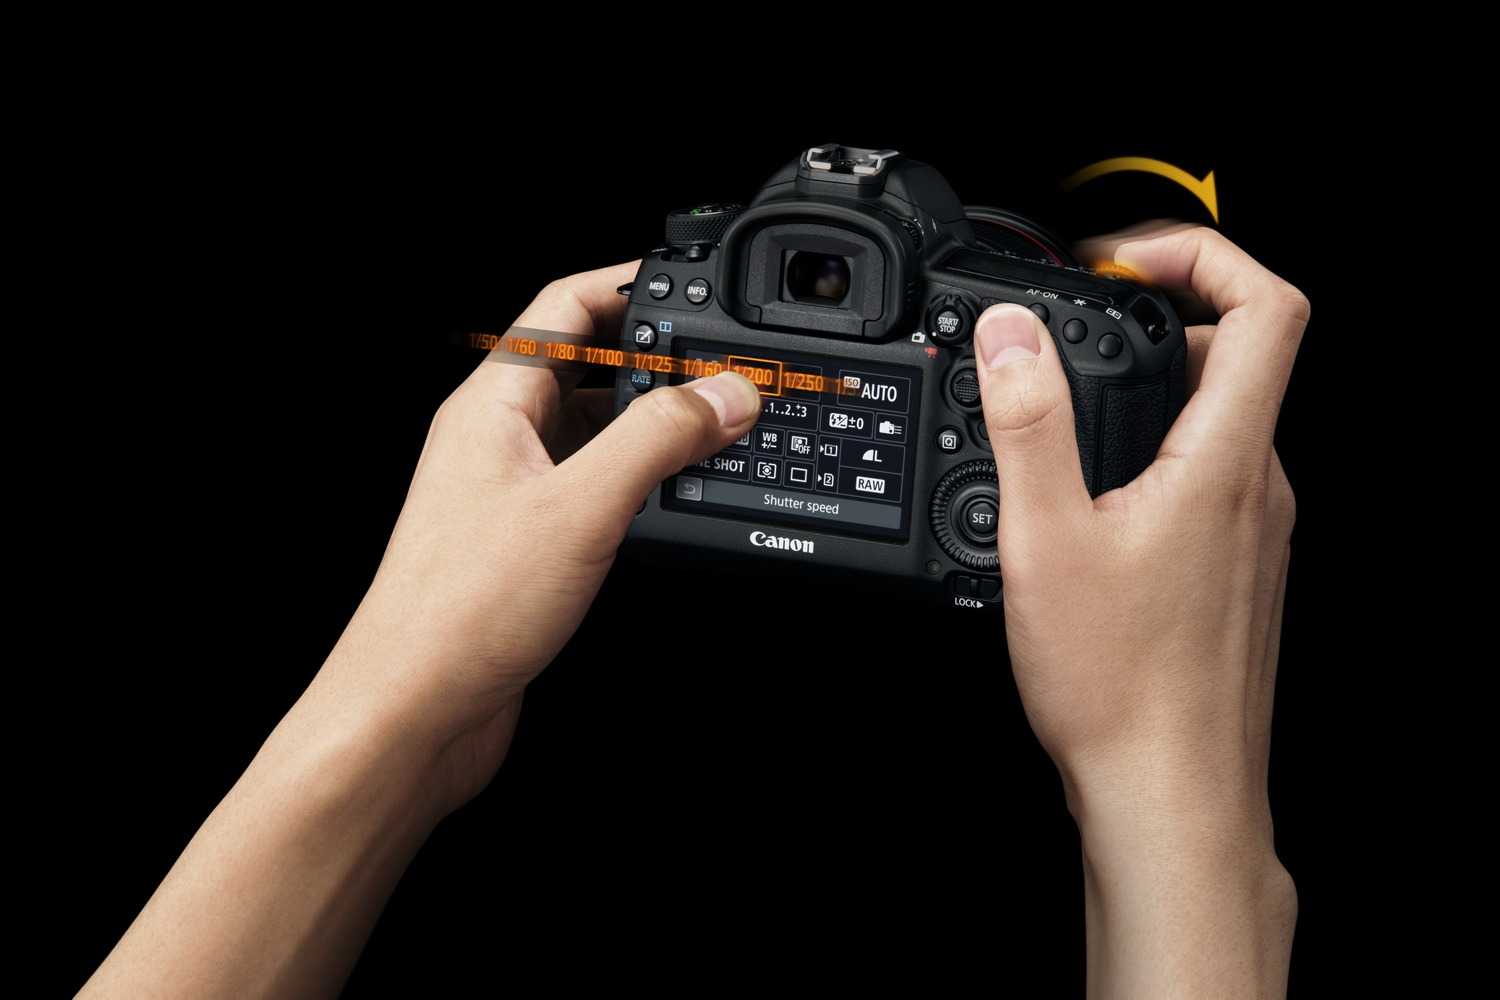 Что такое фокусировка в фотоаппарате? режимы фокусировки